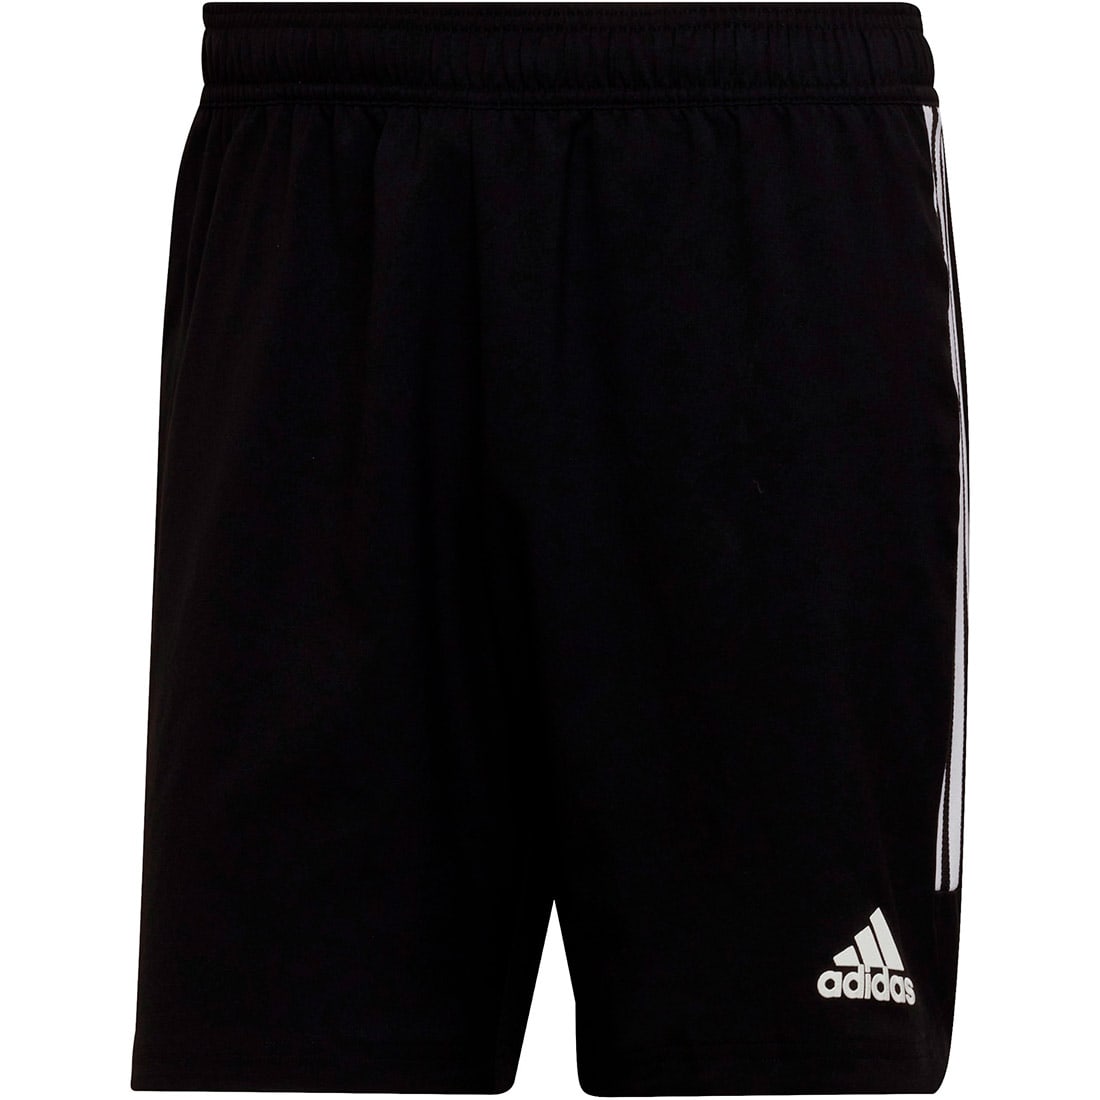 Adidas Herren MD Shorts Condivo 22 schwarz-weiß